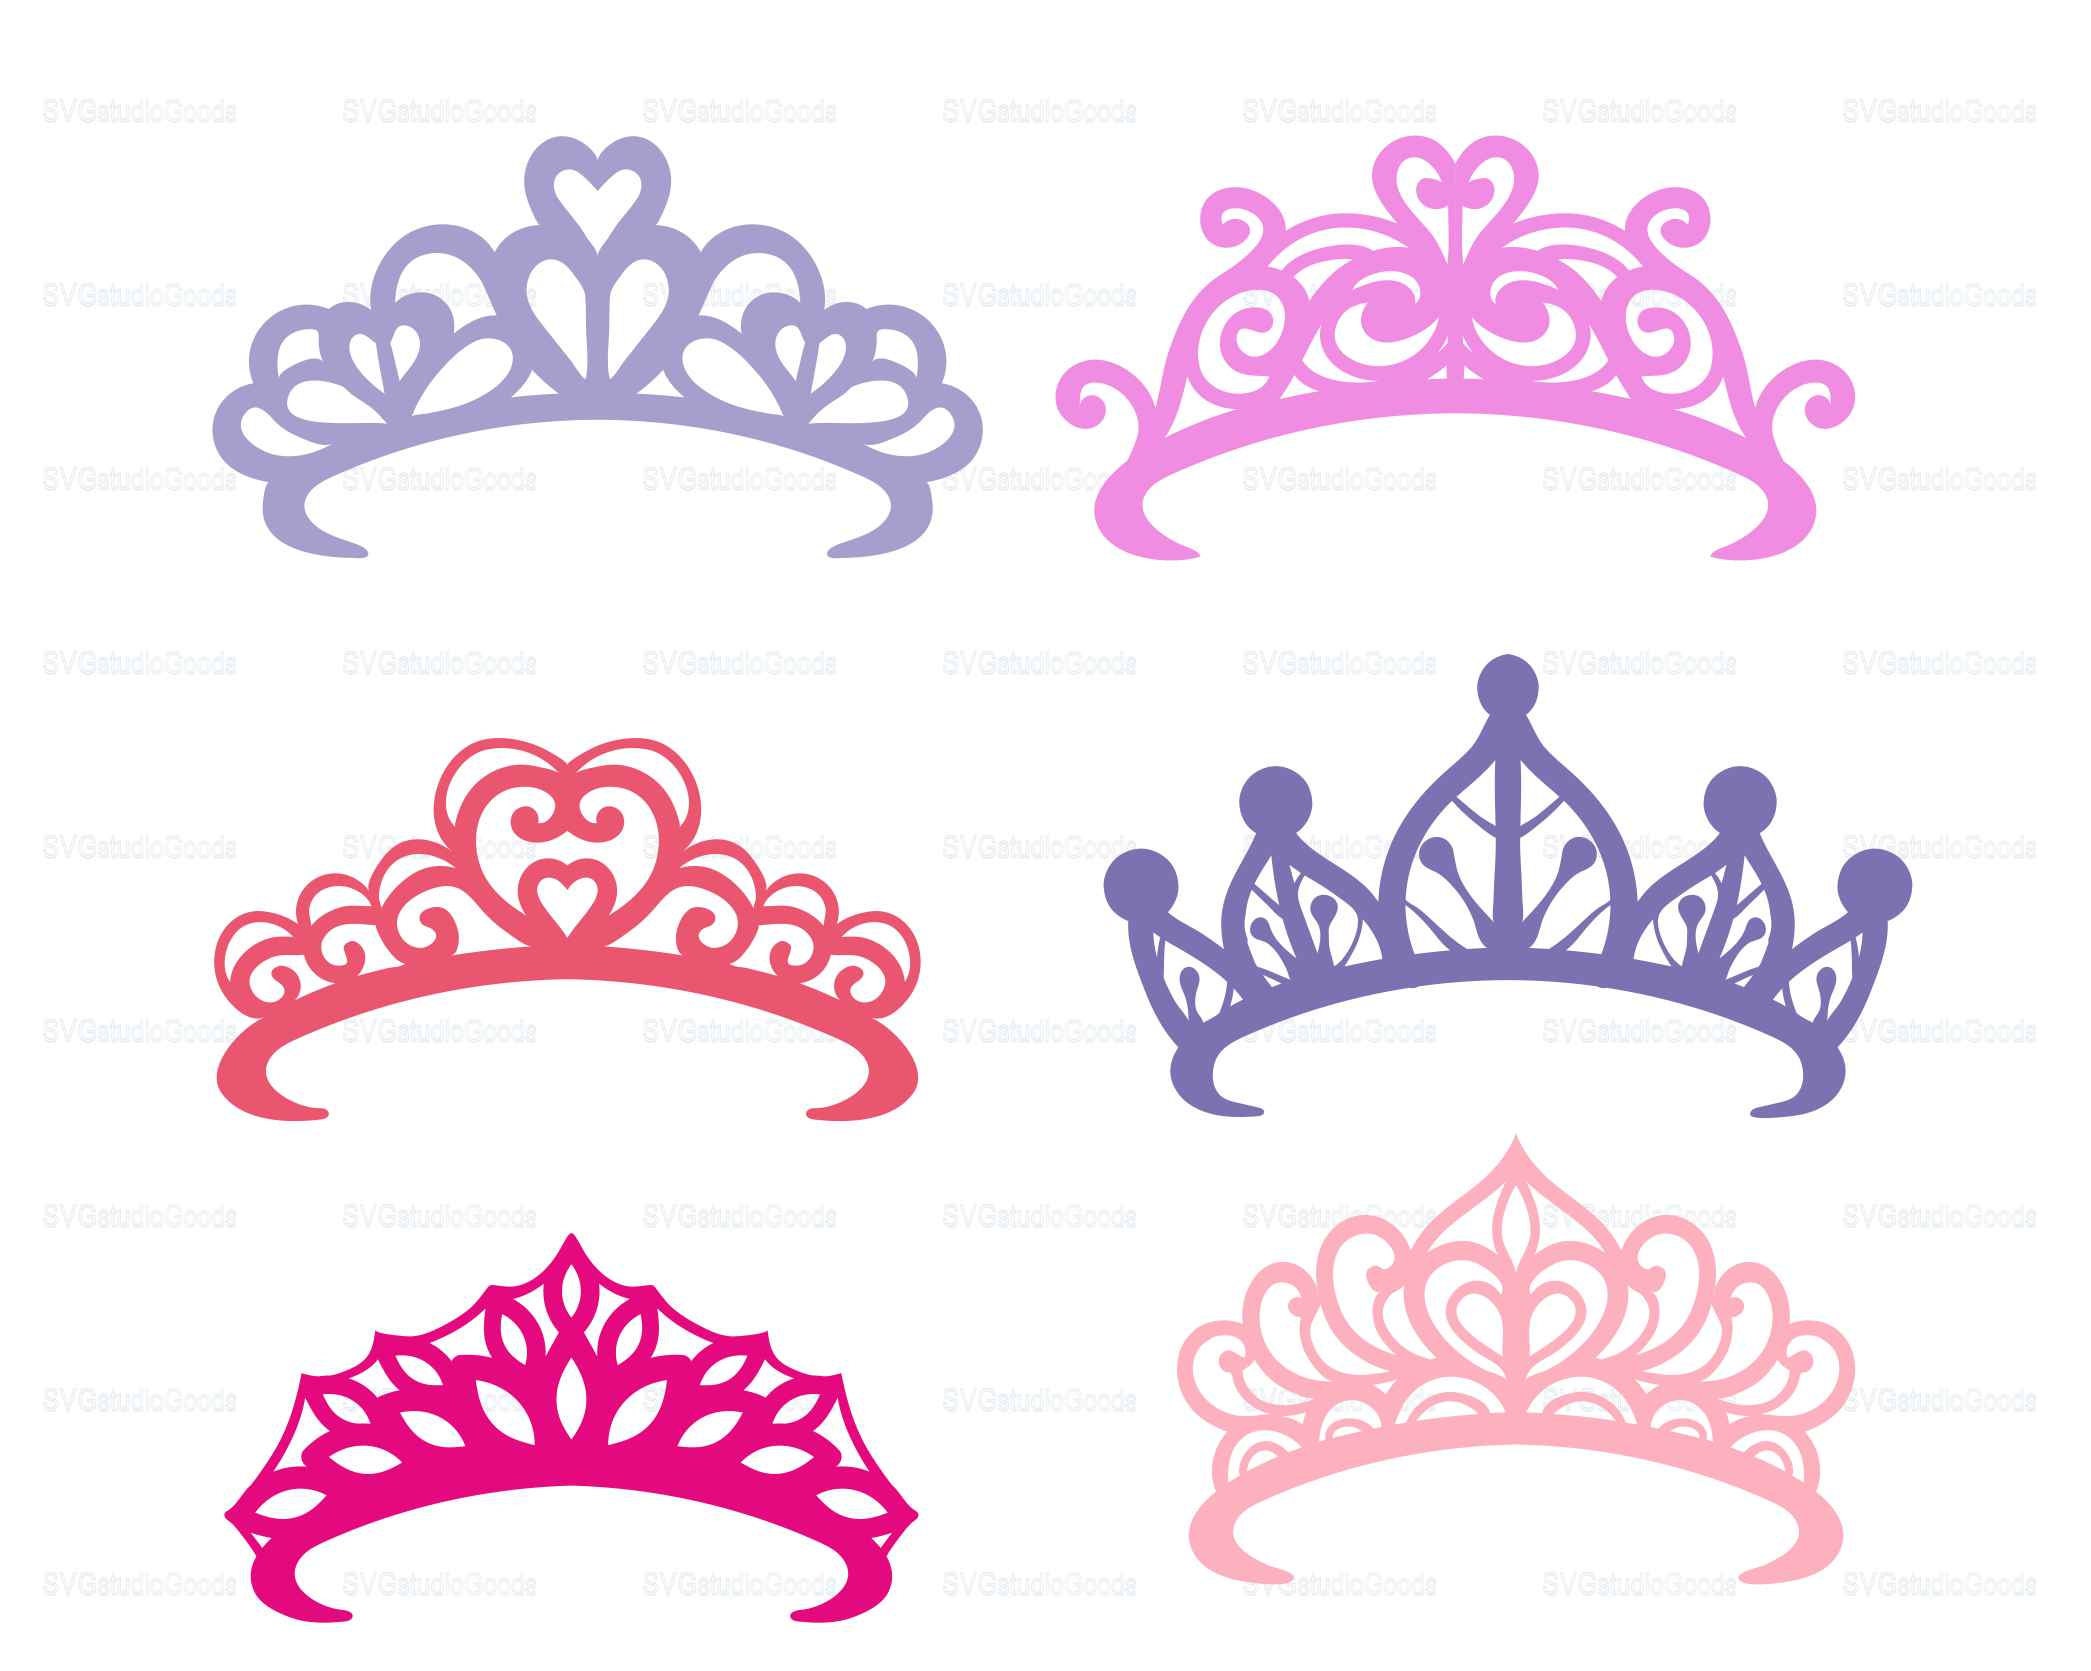 Free Free 151 Disney Princess Tiara Svg SVG PNG EPS DXF File